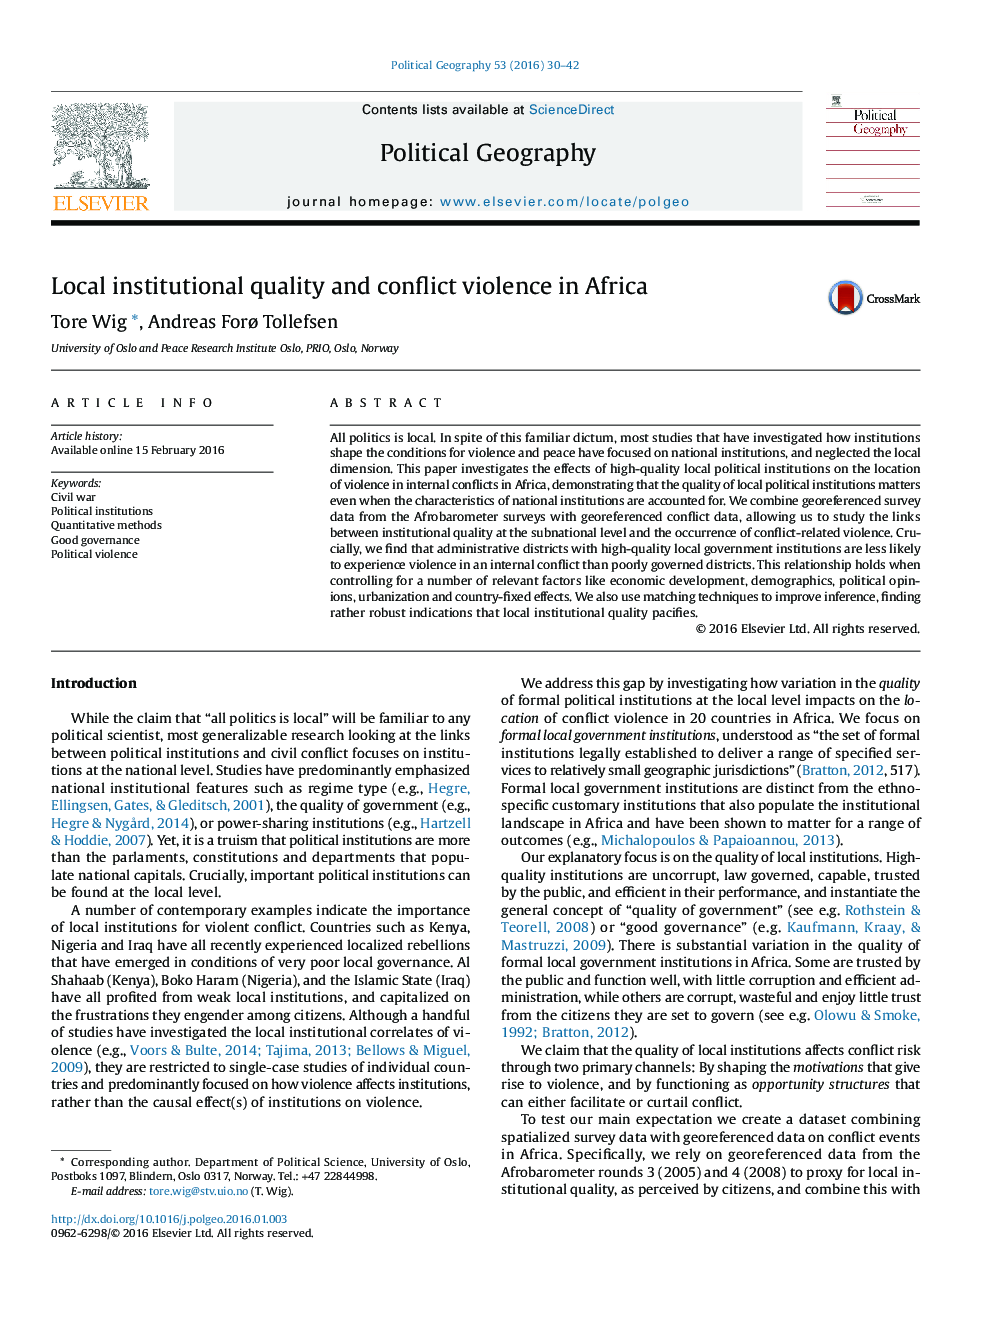 کیفیت محلی نهادی و خشونت درگیری در آفریقا